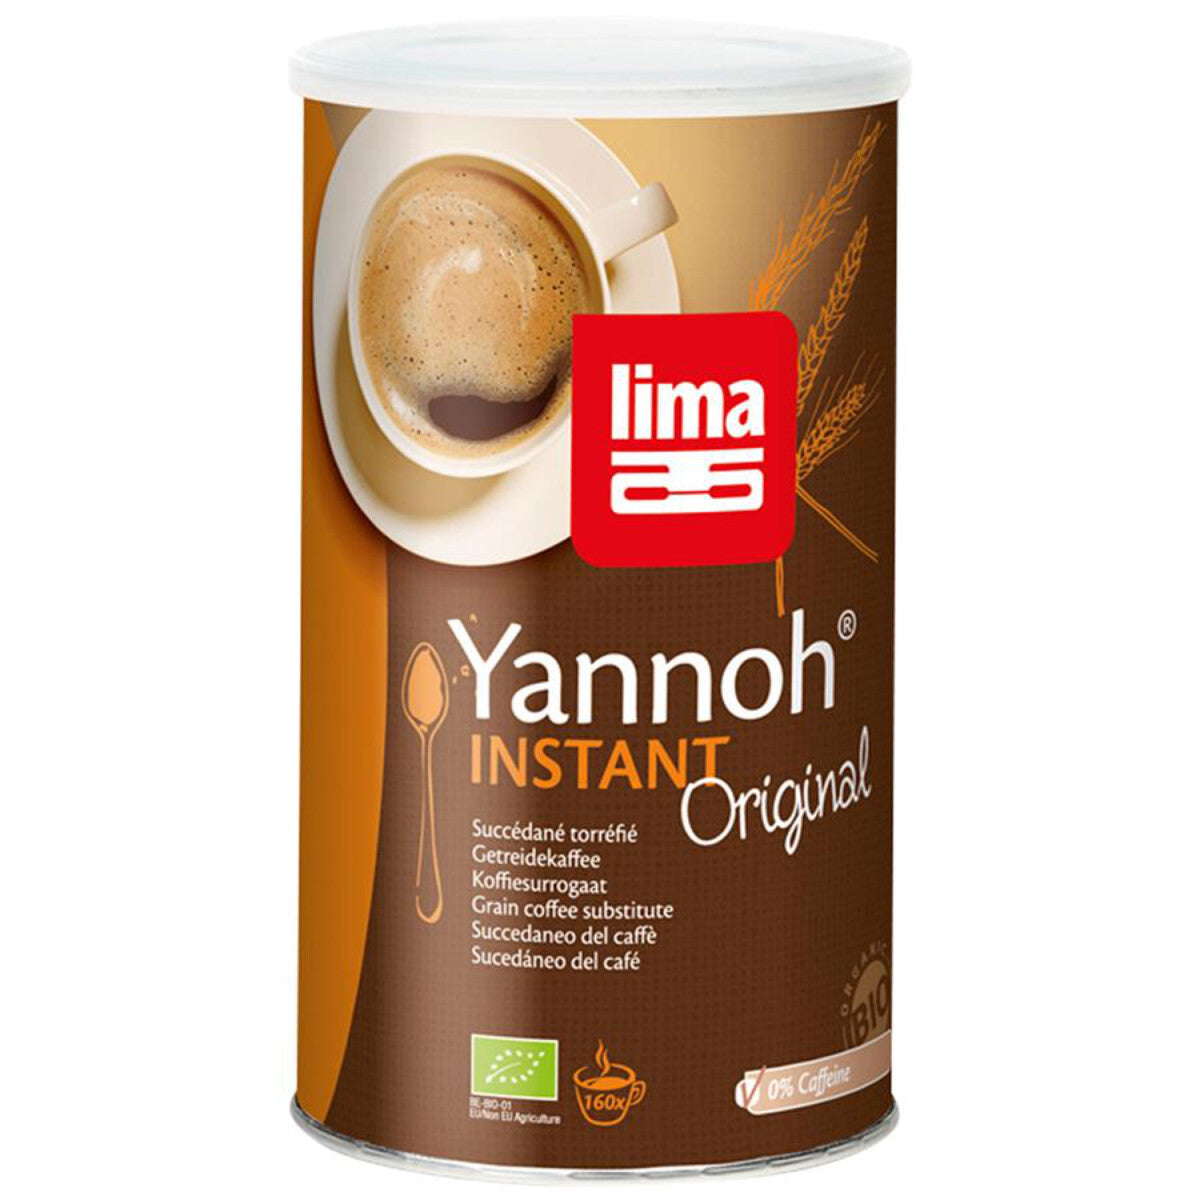 LIMA Yannoh Instant Getreidekaffee - 250 g